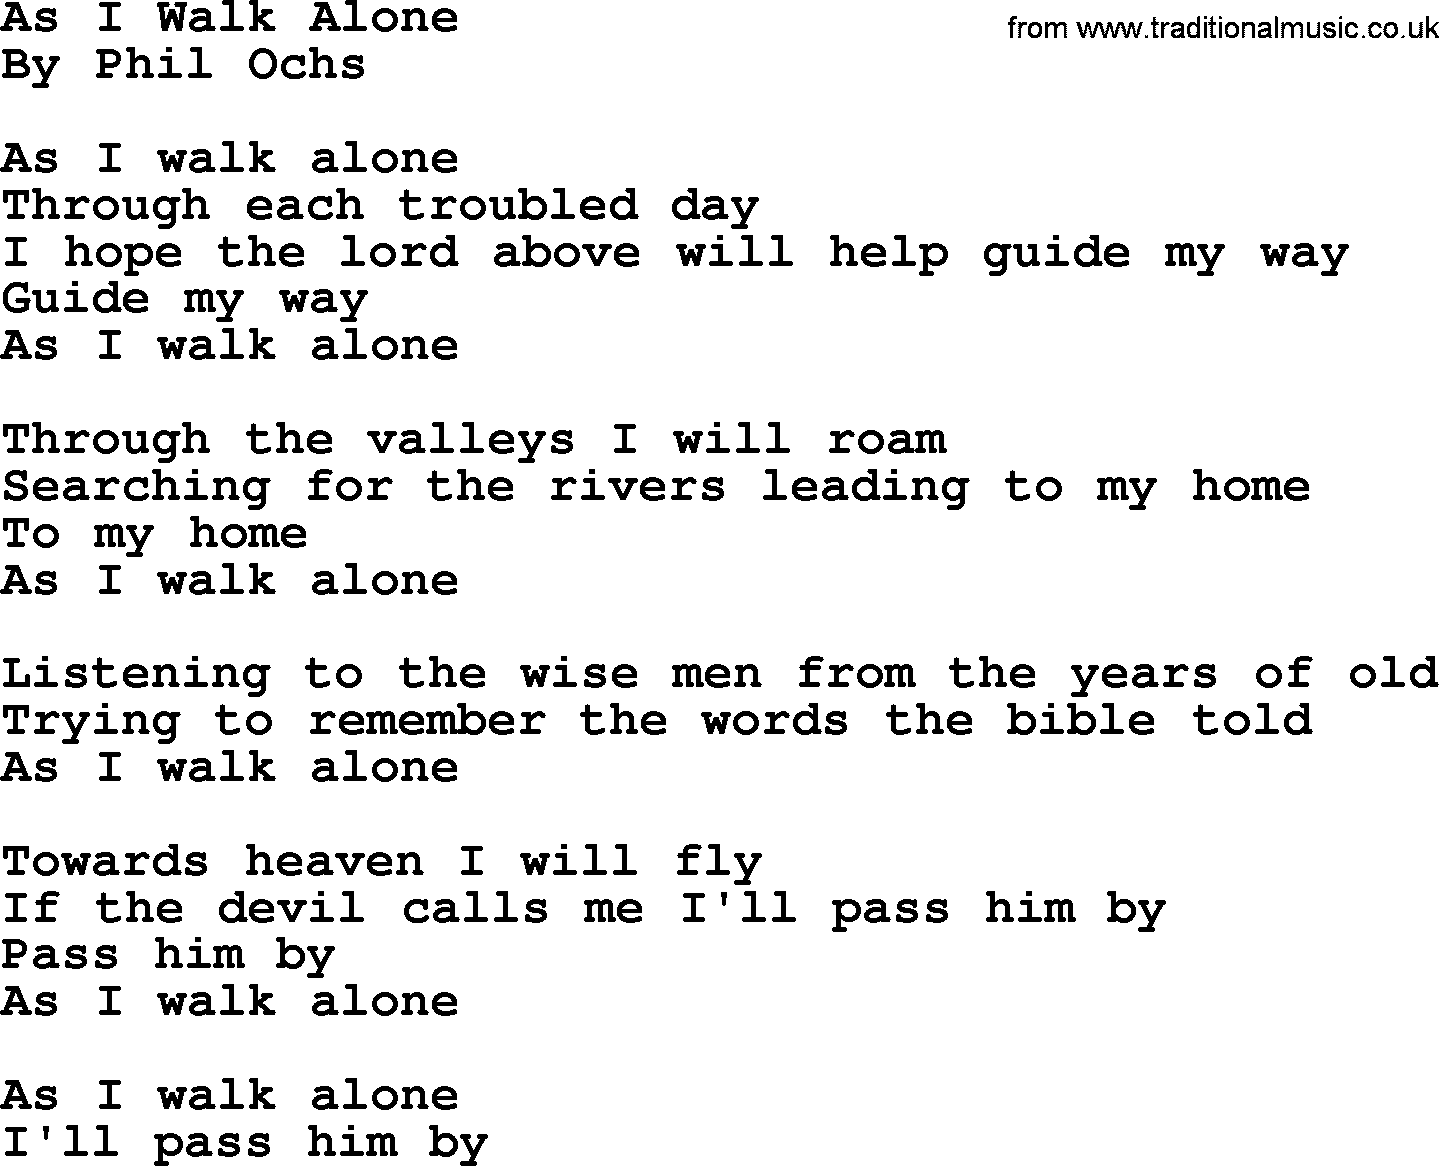 Phil Ochs song As I Walk Alone, lyrics